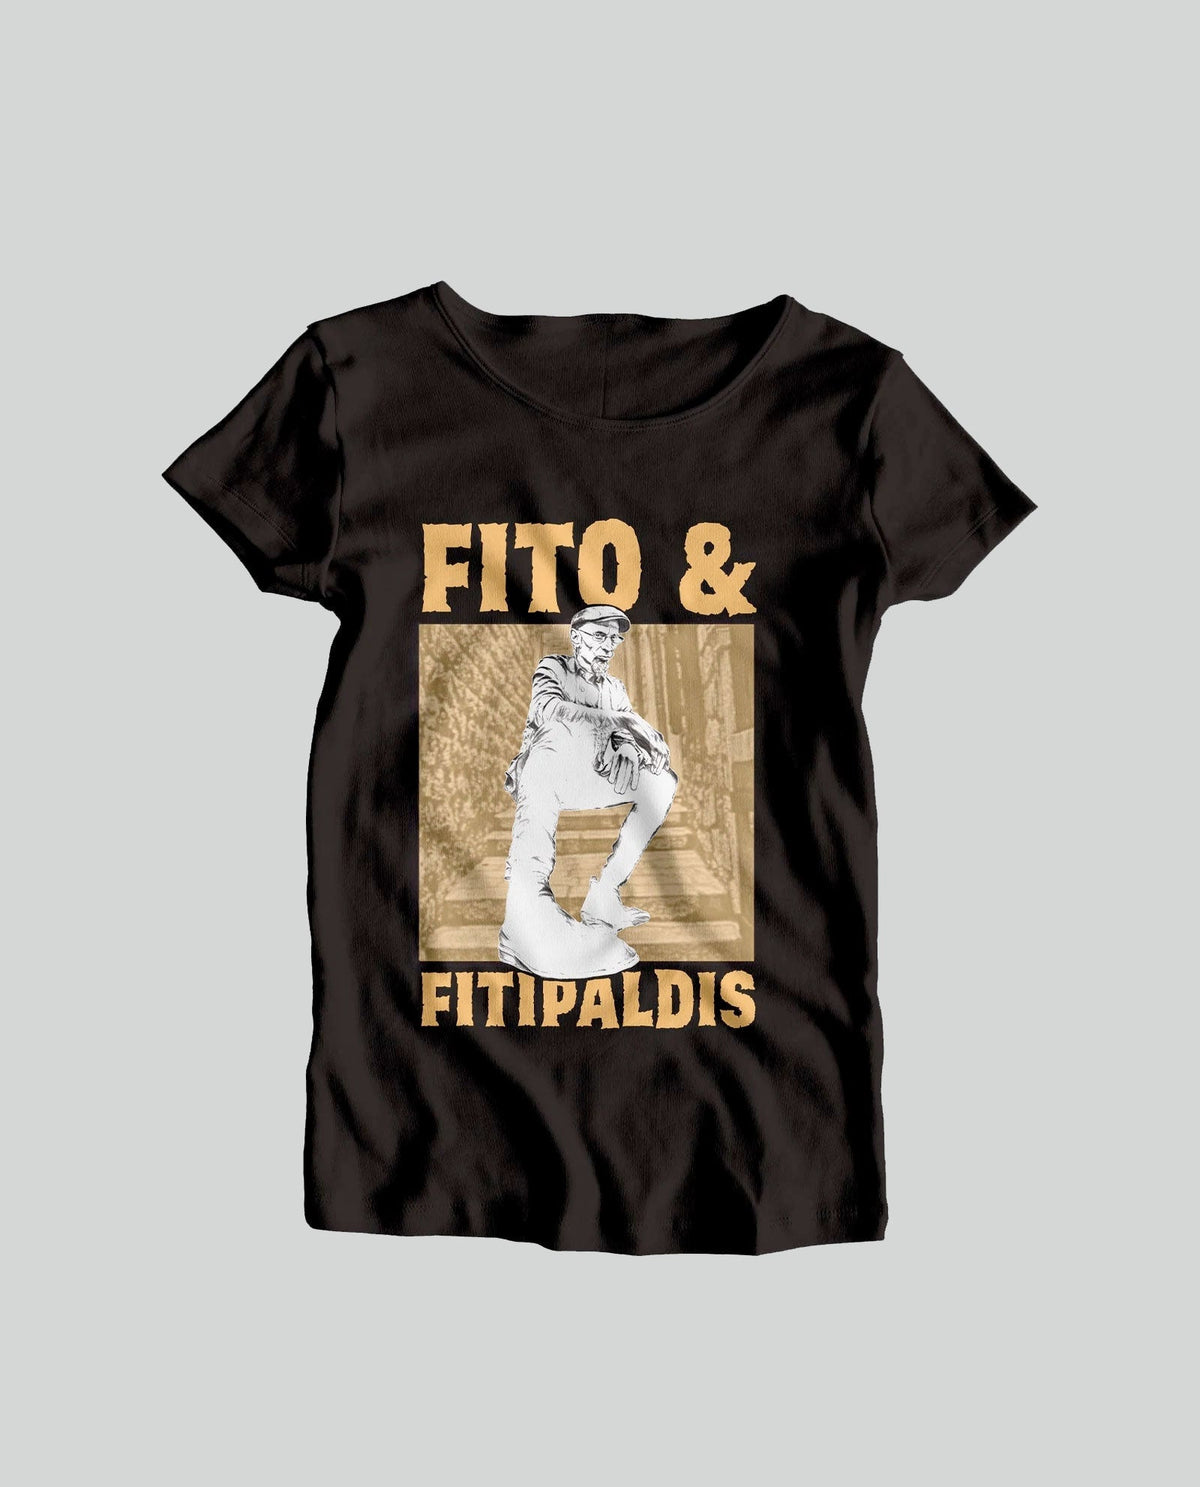 Camiseta "Cerezo y Fitipaldis" Mujer - Fito y Fitipaldis - Rocktud - Fito y Fitipaldis